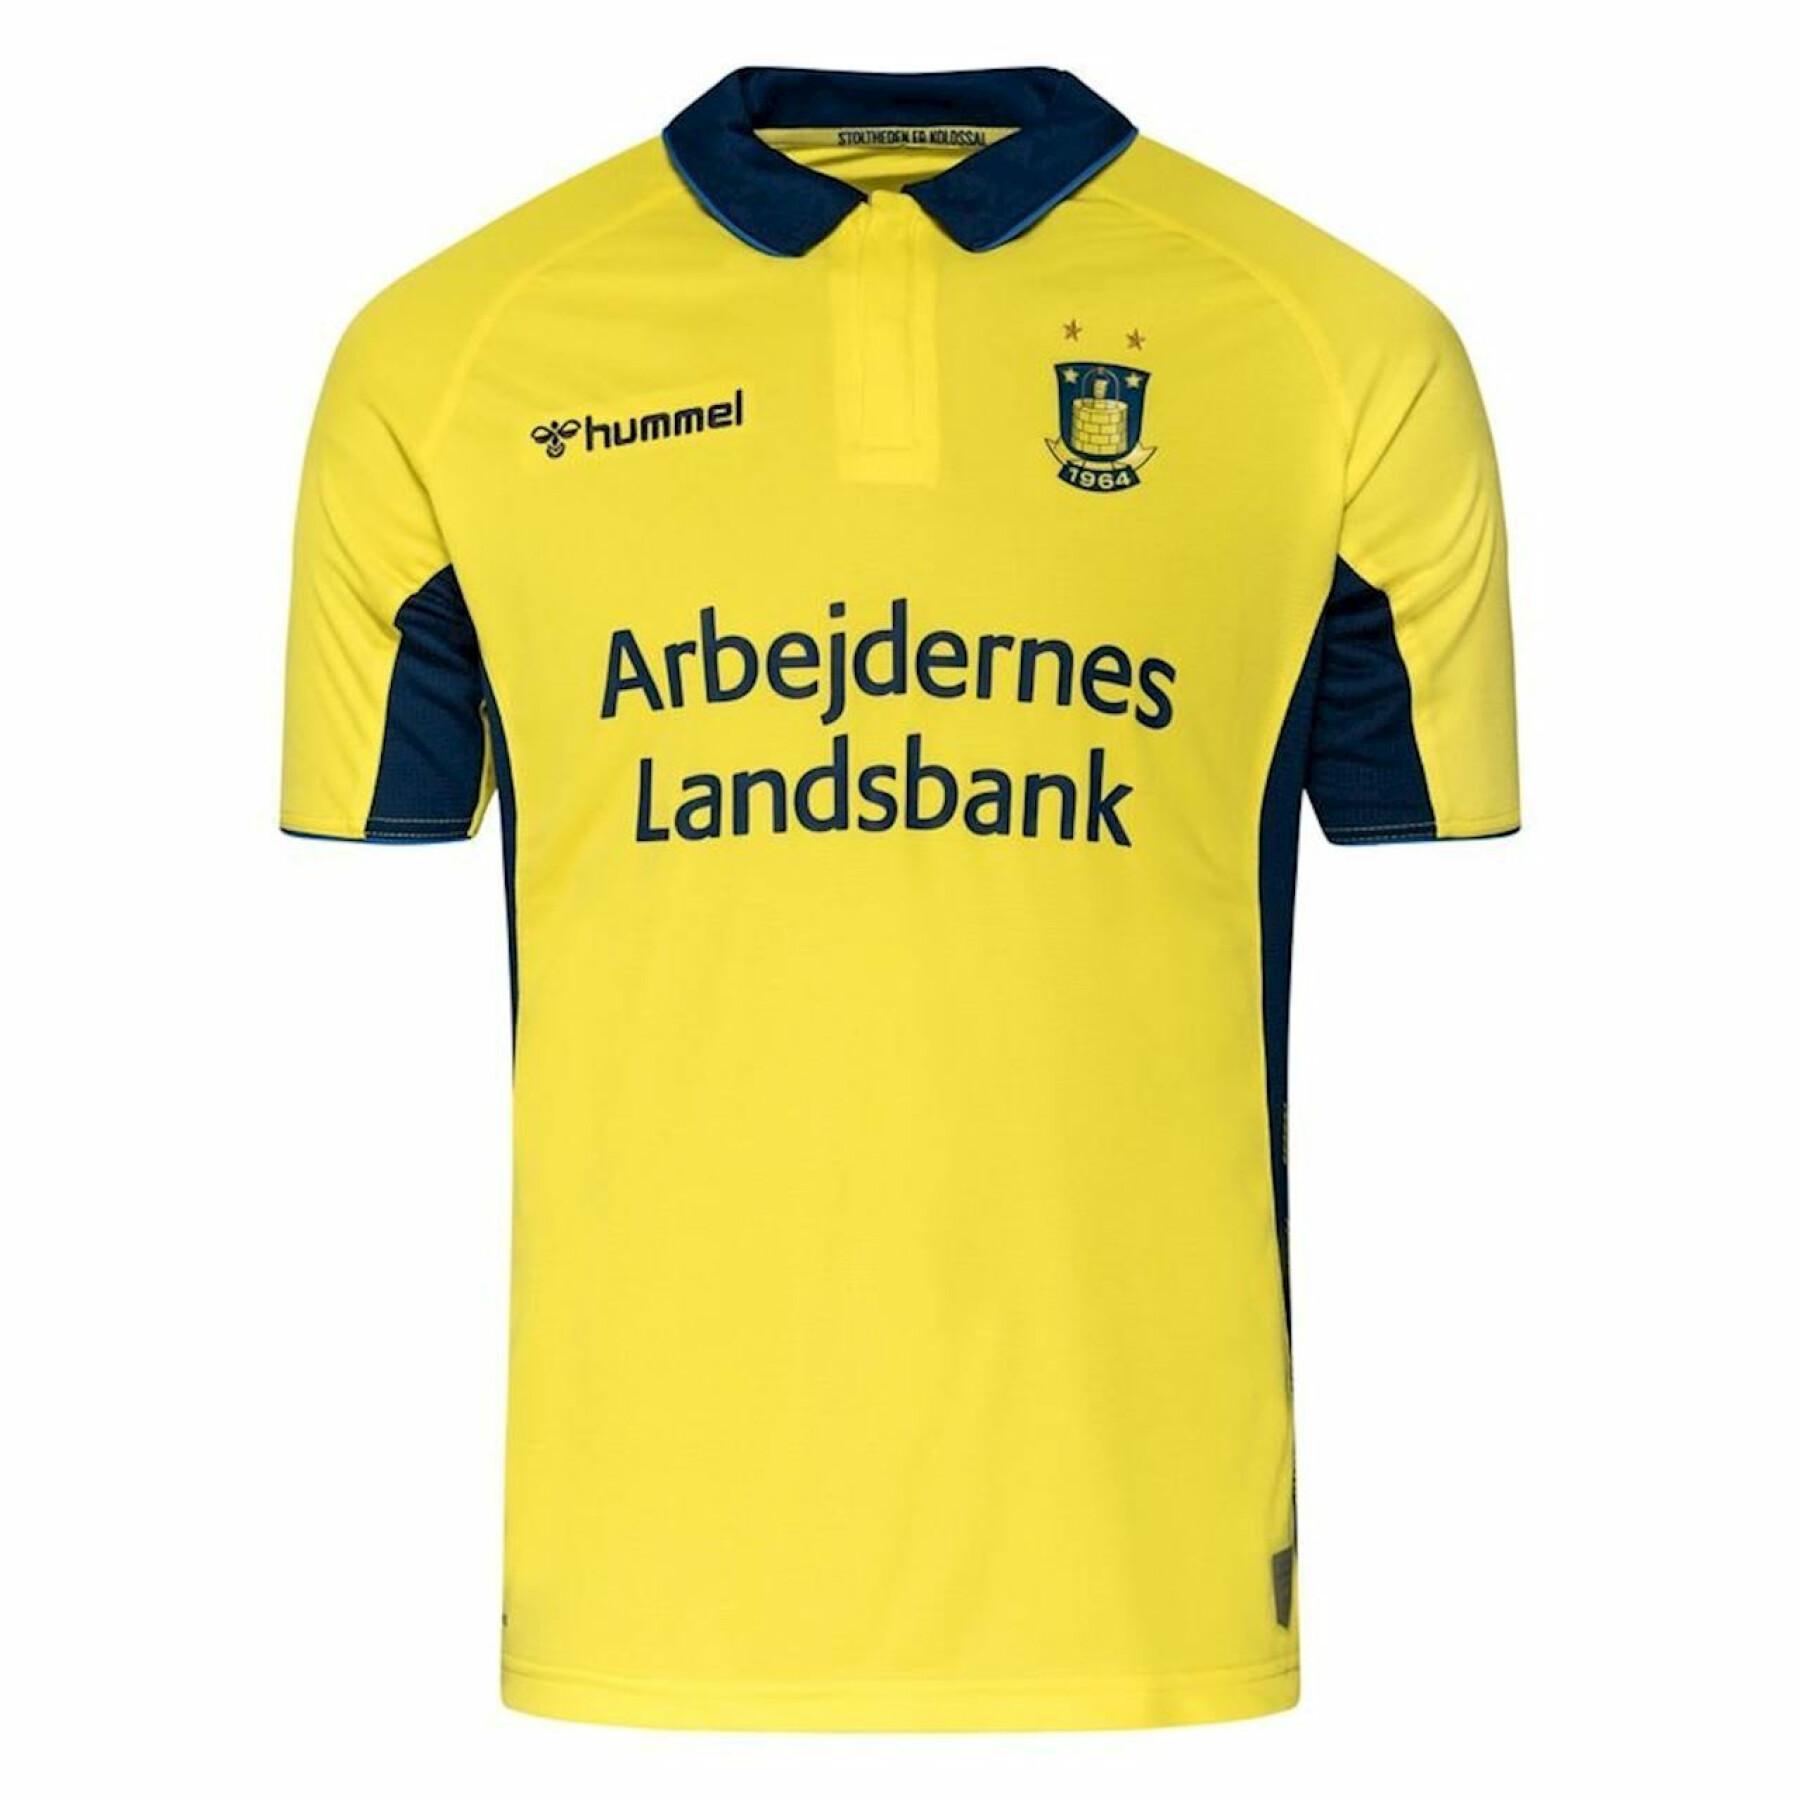 Camisola para crianças Brøndby IF 2019/20